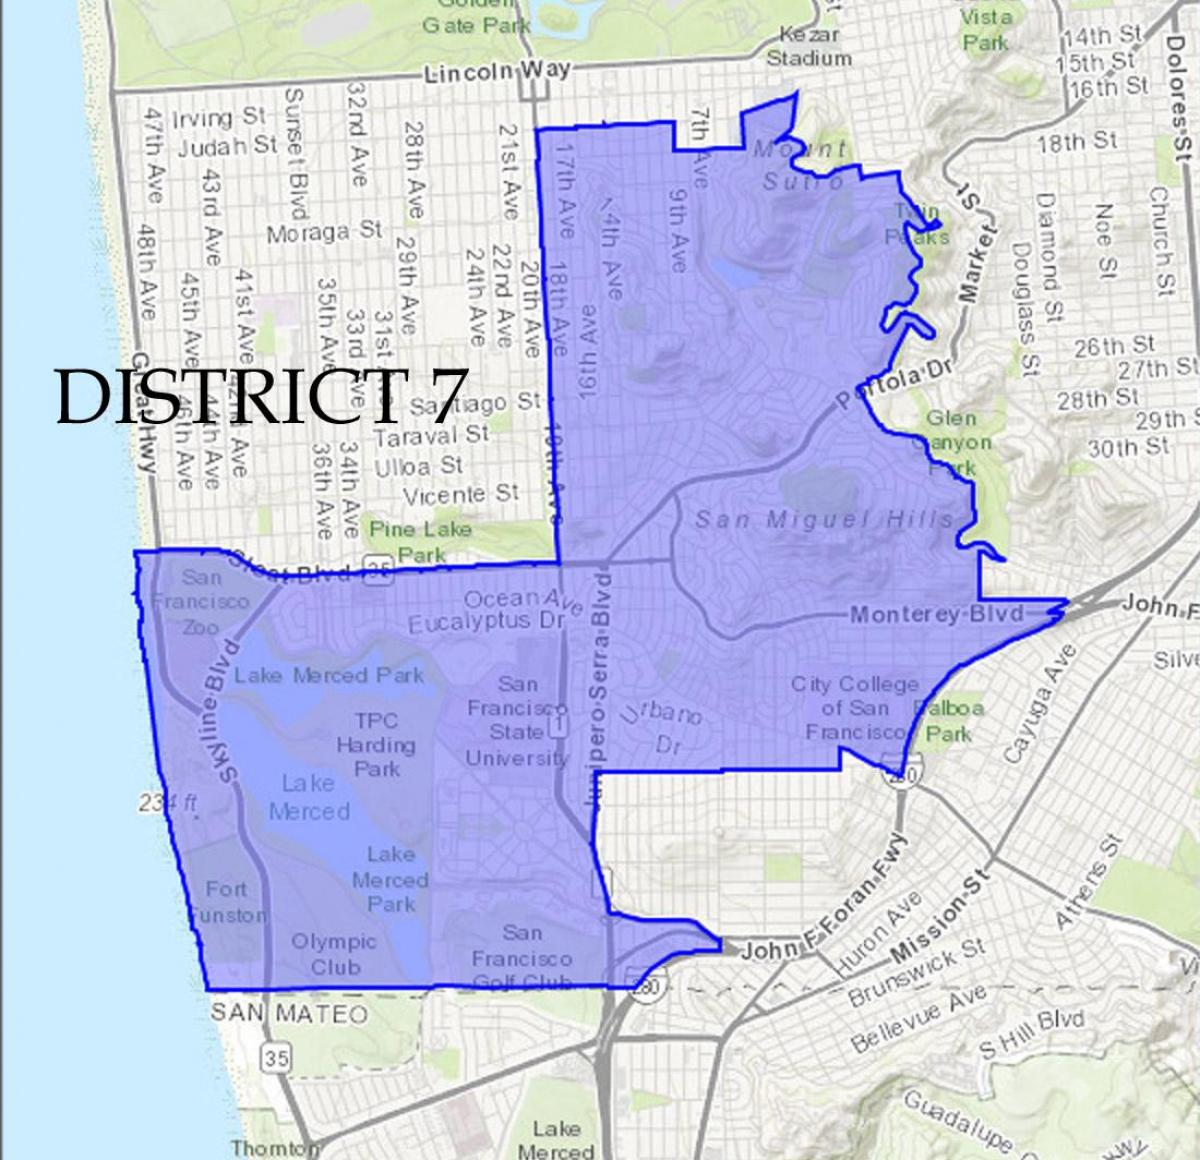 Peta San Francisco district 7 